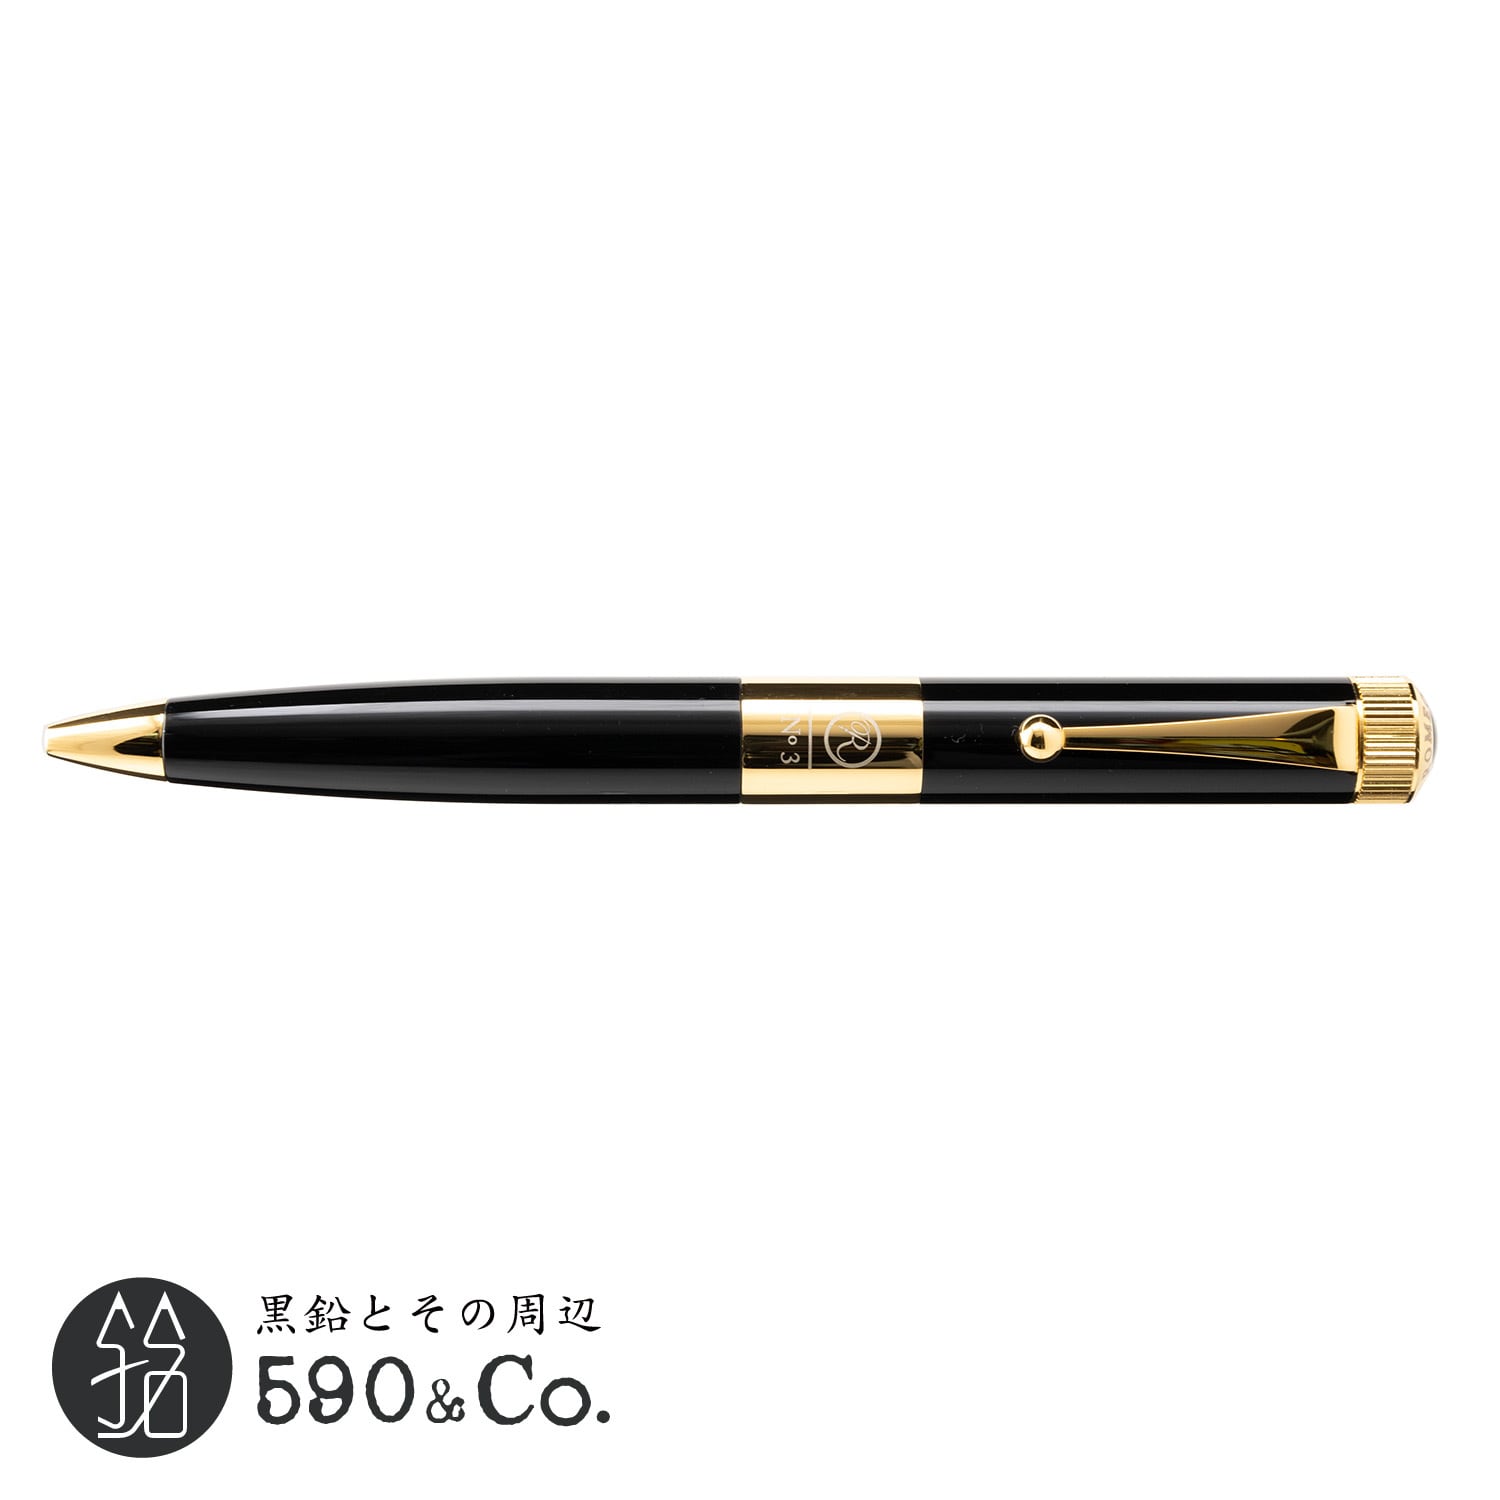 ITO-YA/伊東屋】ROMEO No.3ボールペン 太軸 (ブラック/ゴールド) | 590&Co.